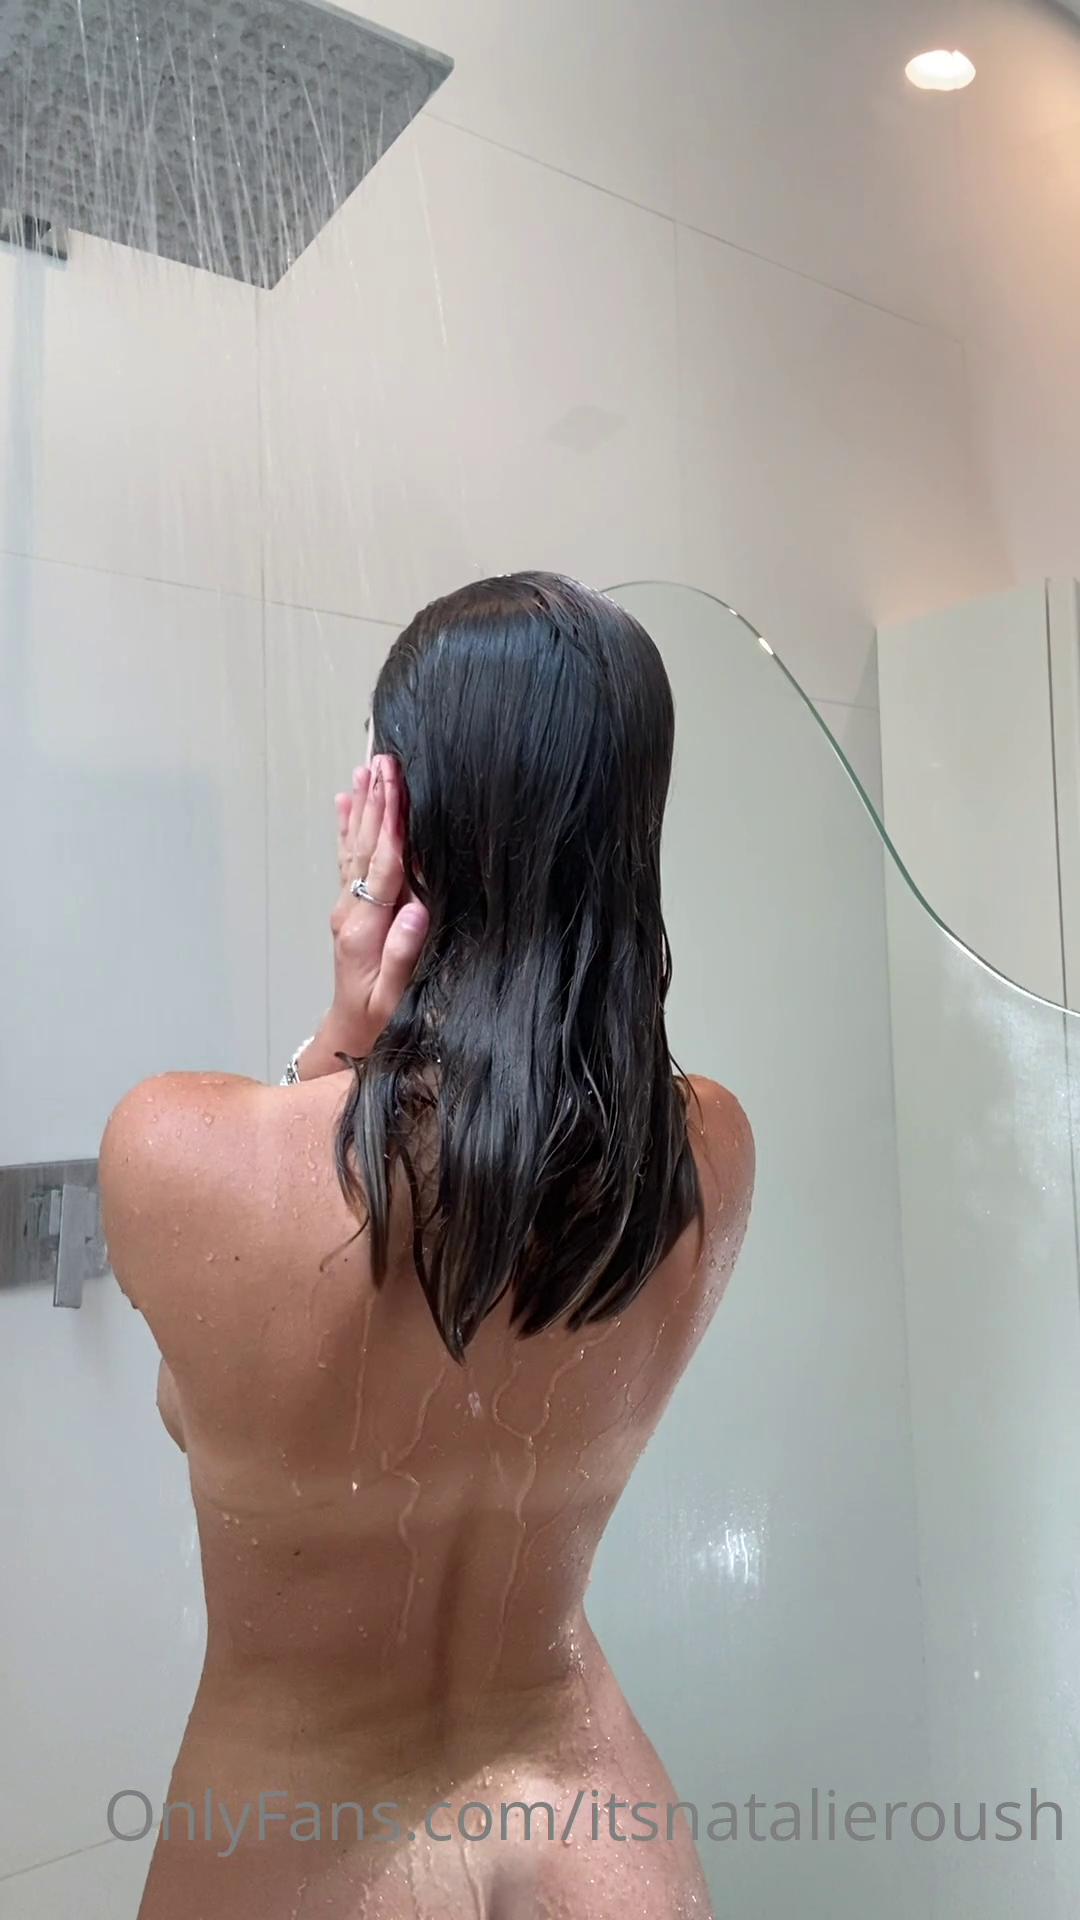 natalie roush nude wet shower ppv onlyfans video leaked ACXOMV